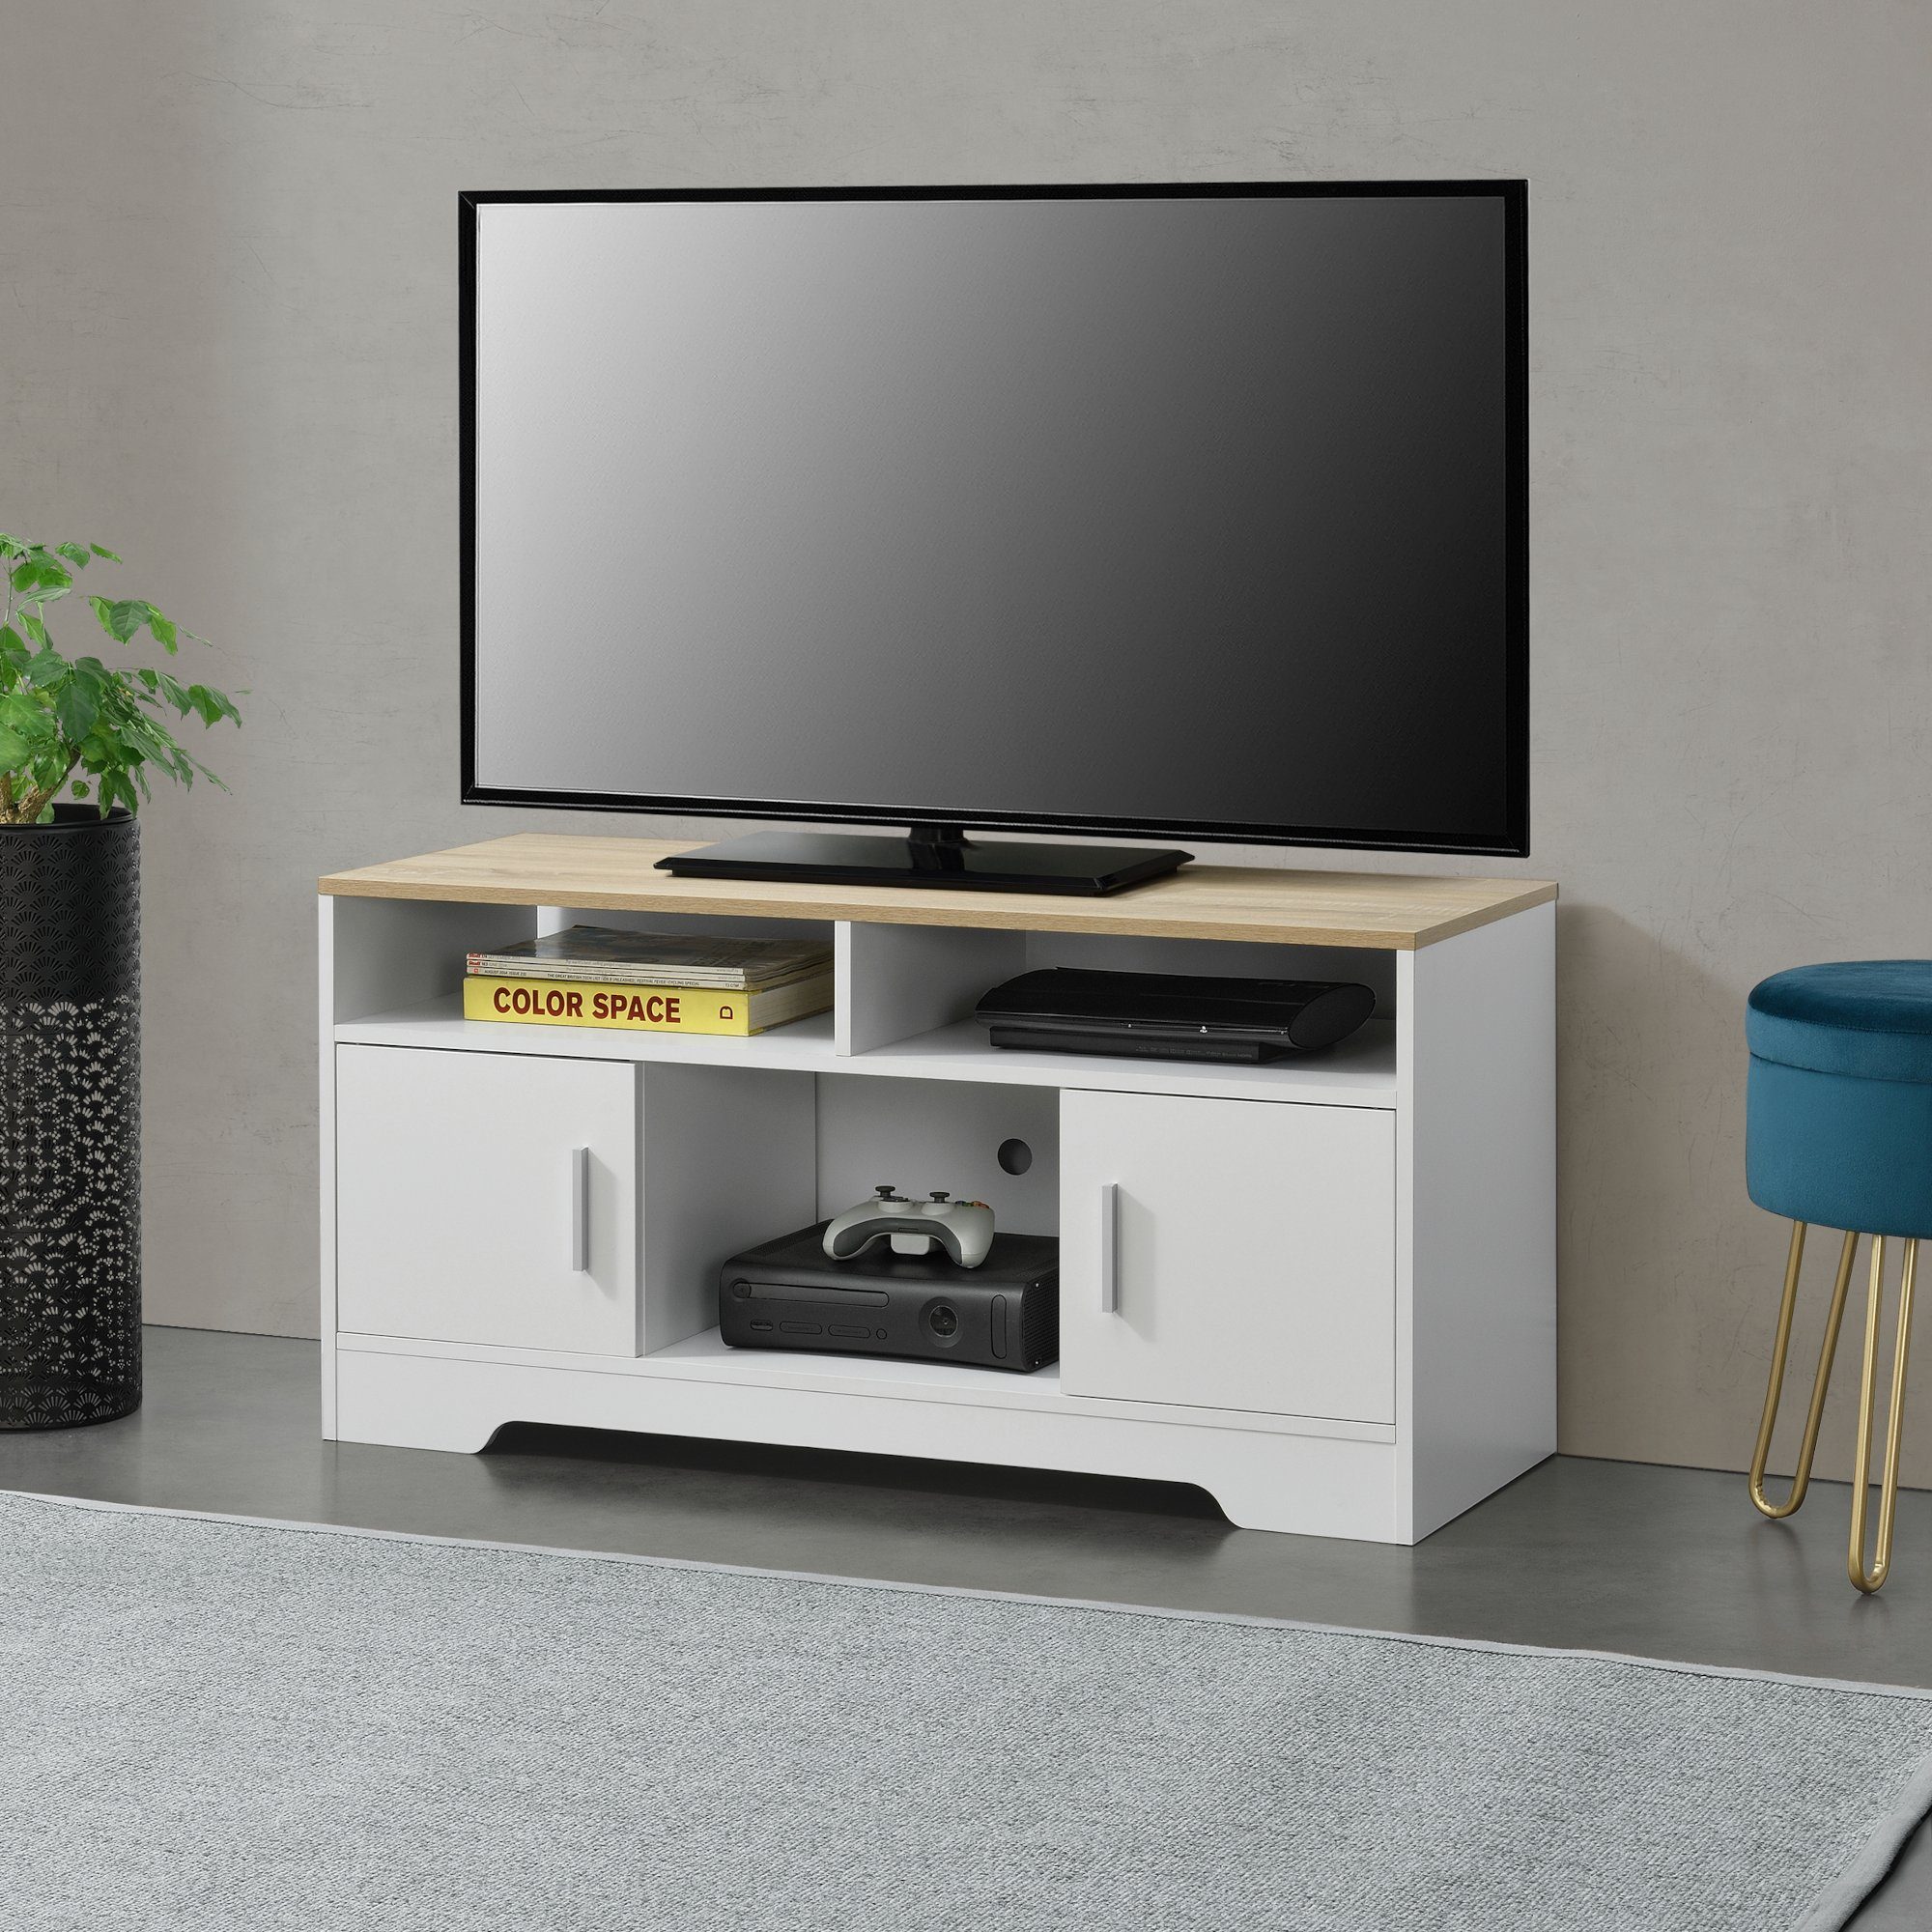 RGB LED TV Schrank Lowboard Unterschrank Fernsehschrank Fernsehtisch TV Möbel 